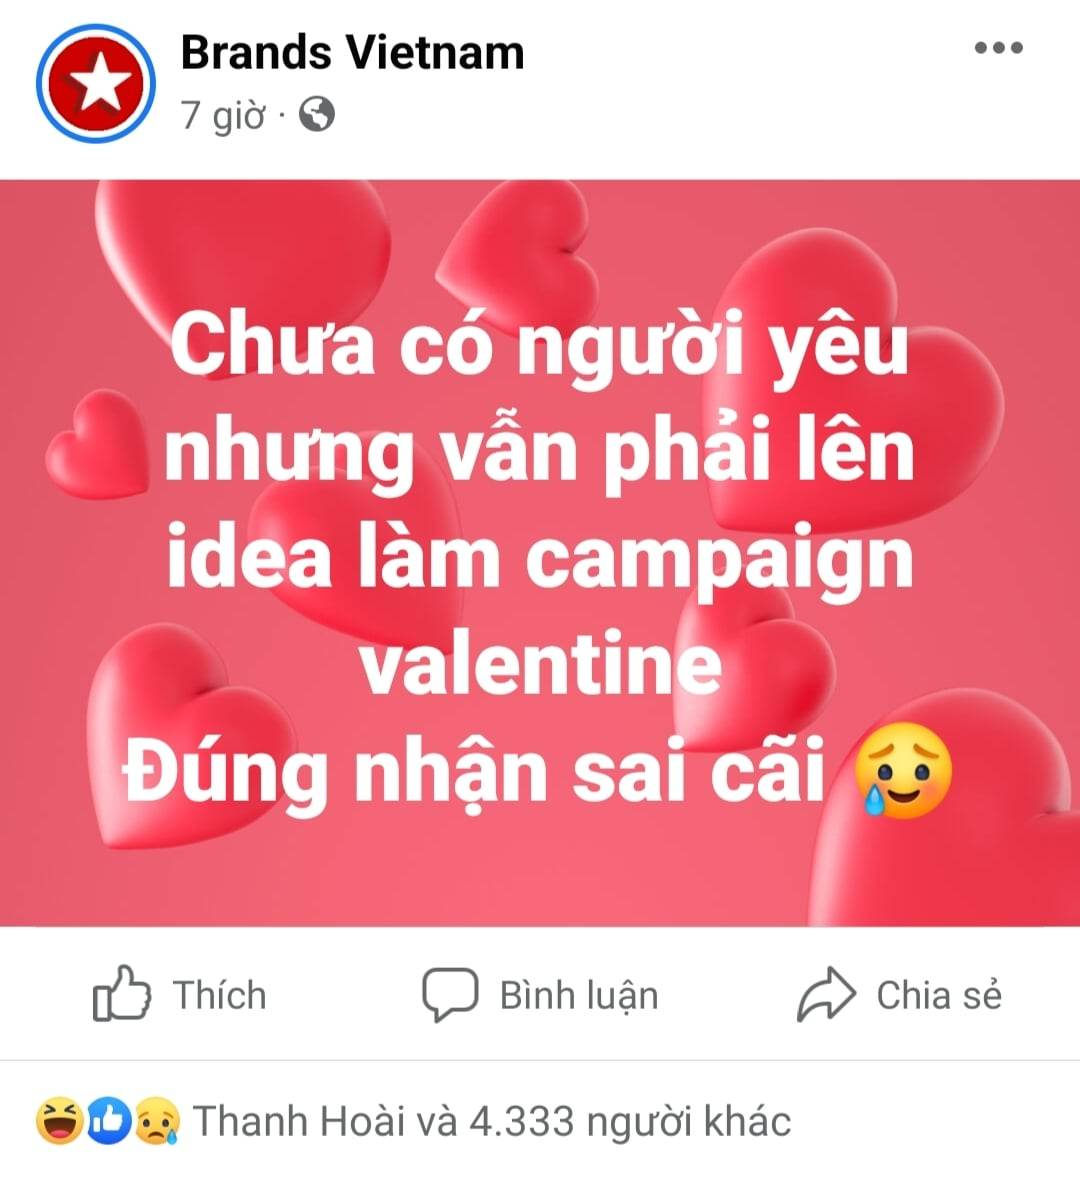 Brands Vietnam vừa nắm bắt xu thế Valentine, vừa nhanh nhạy bắt trend "đúng nhận sai cãi"